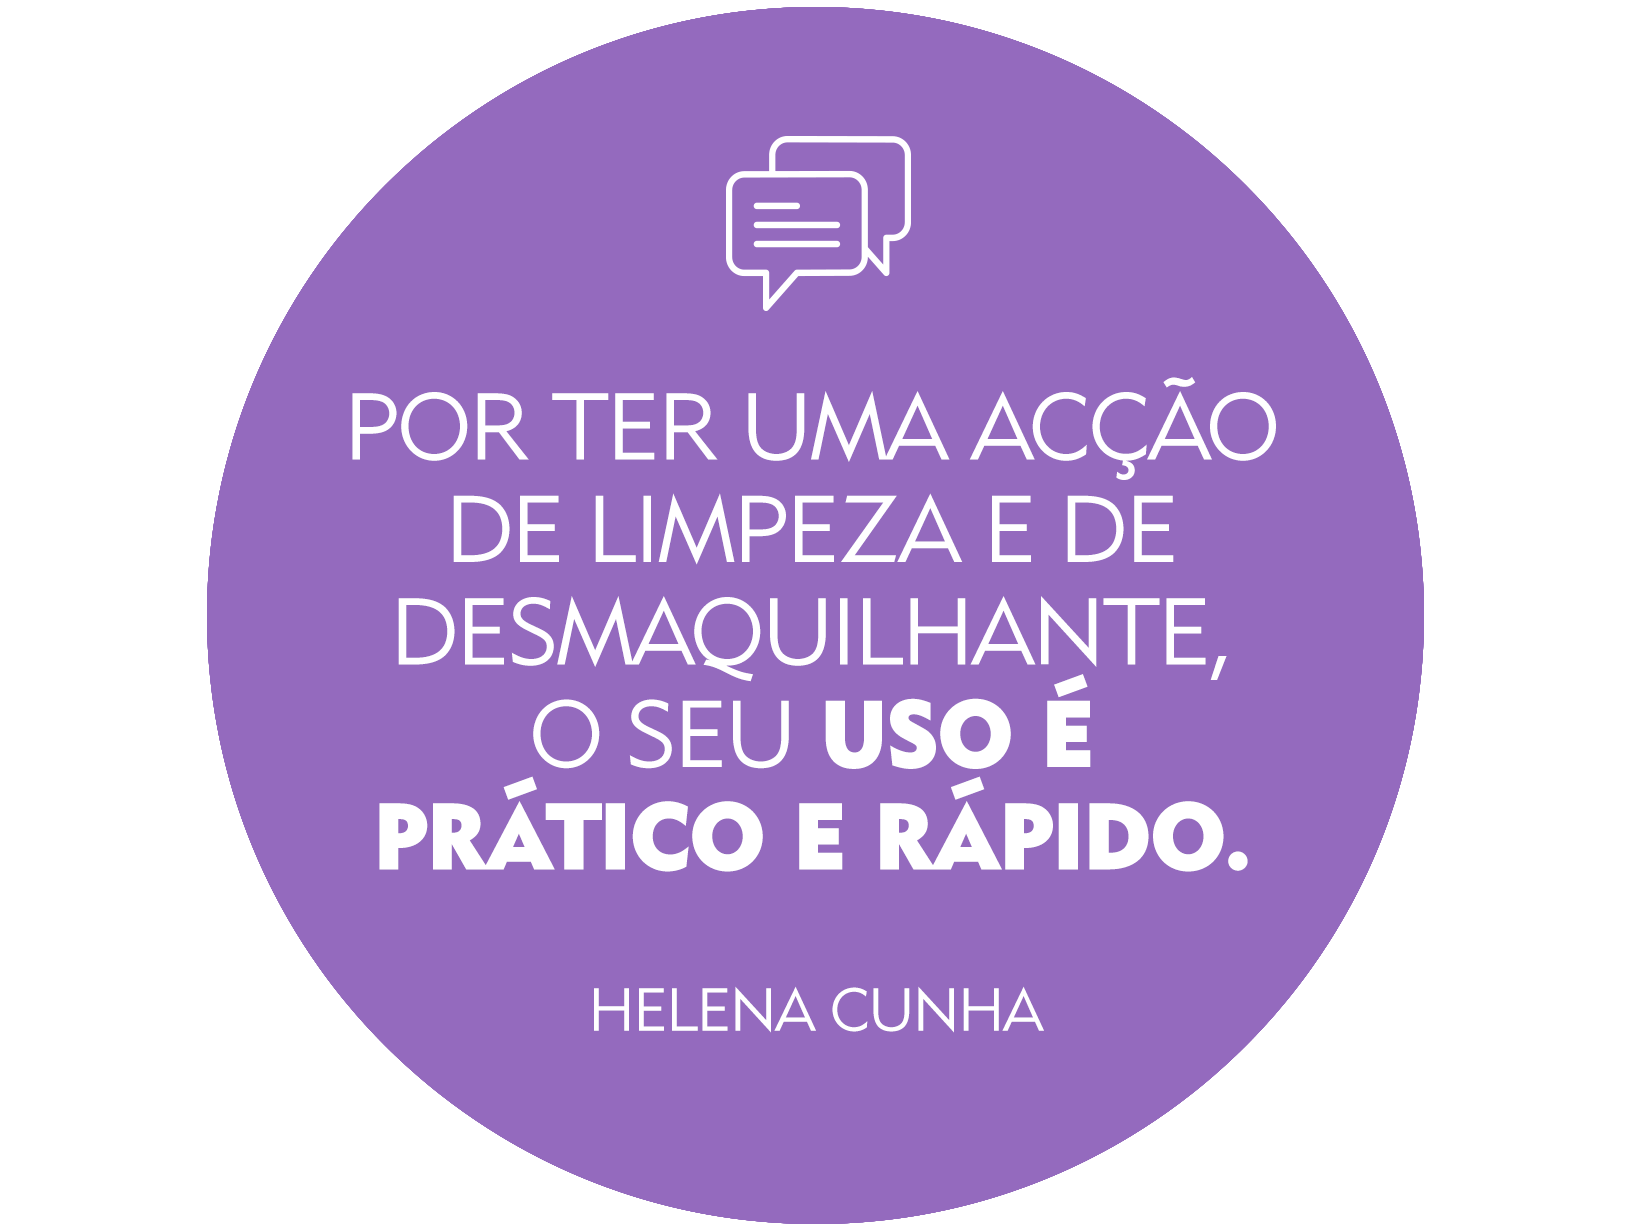 Review NIVEA Helena Cunha